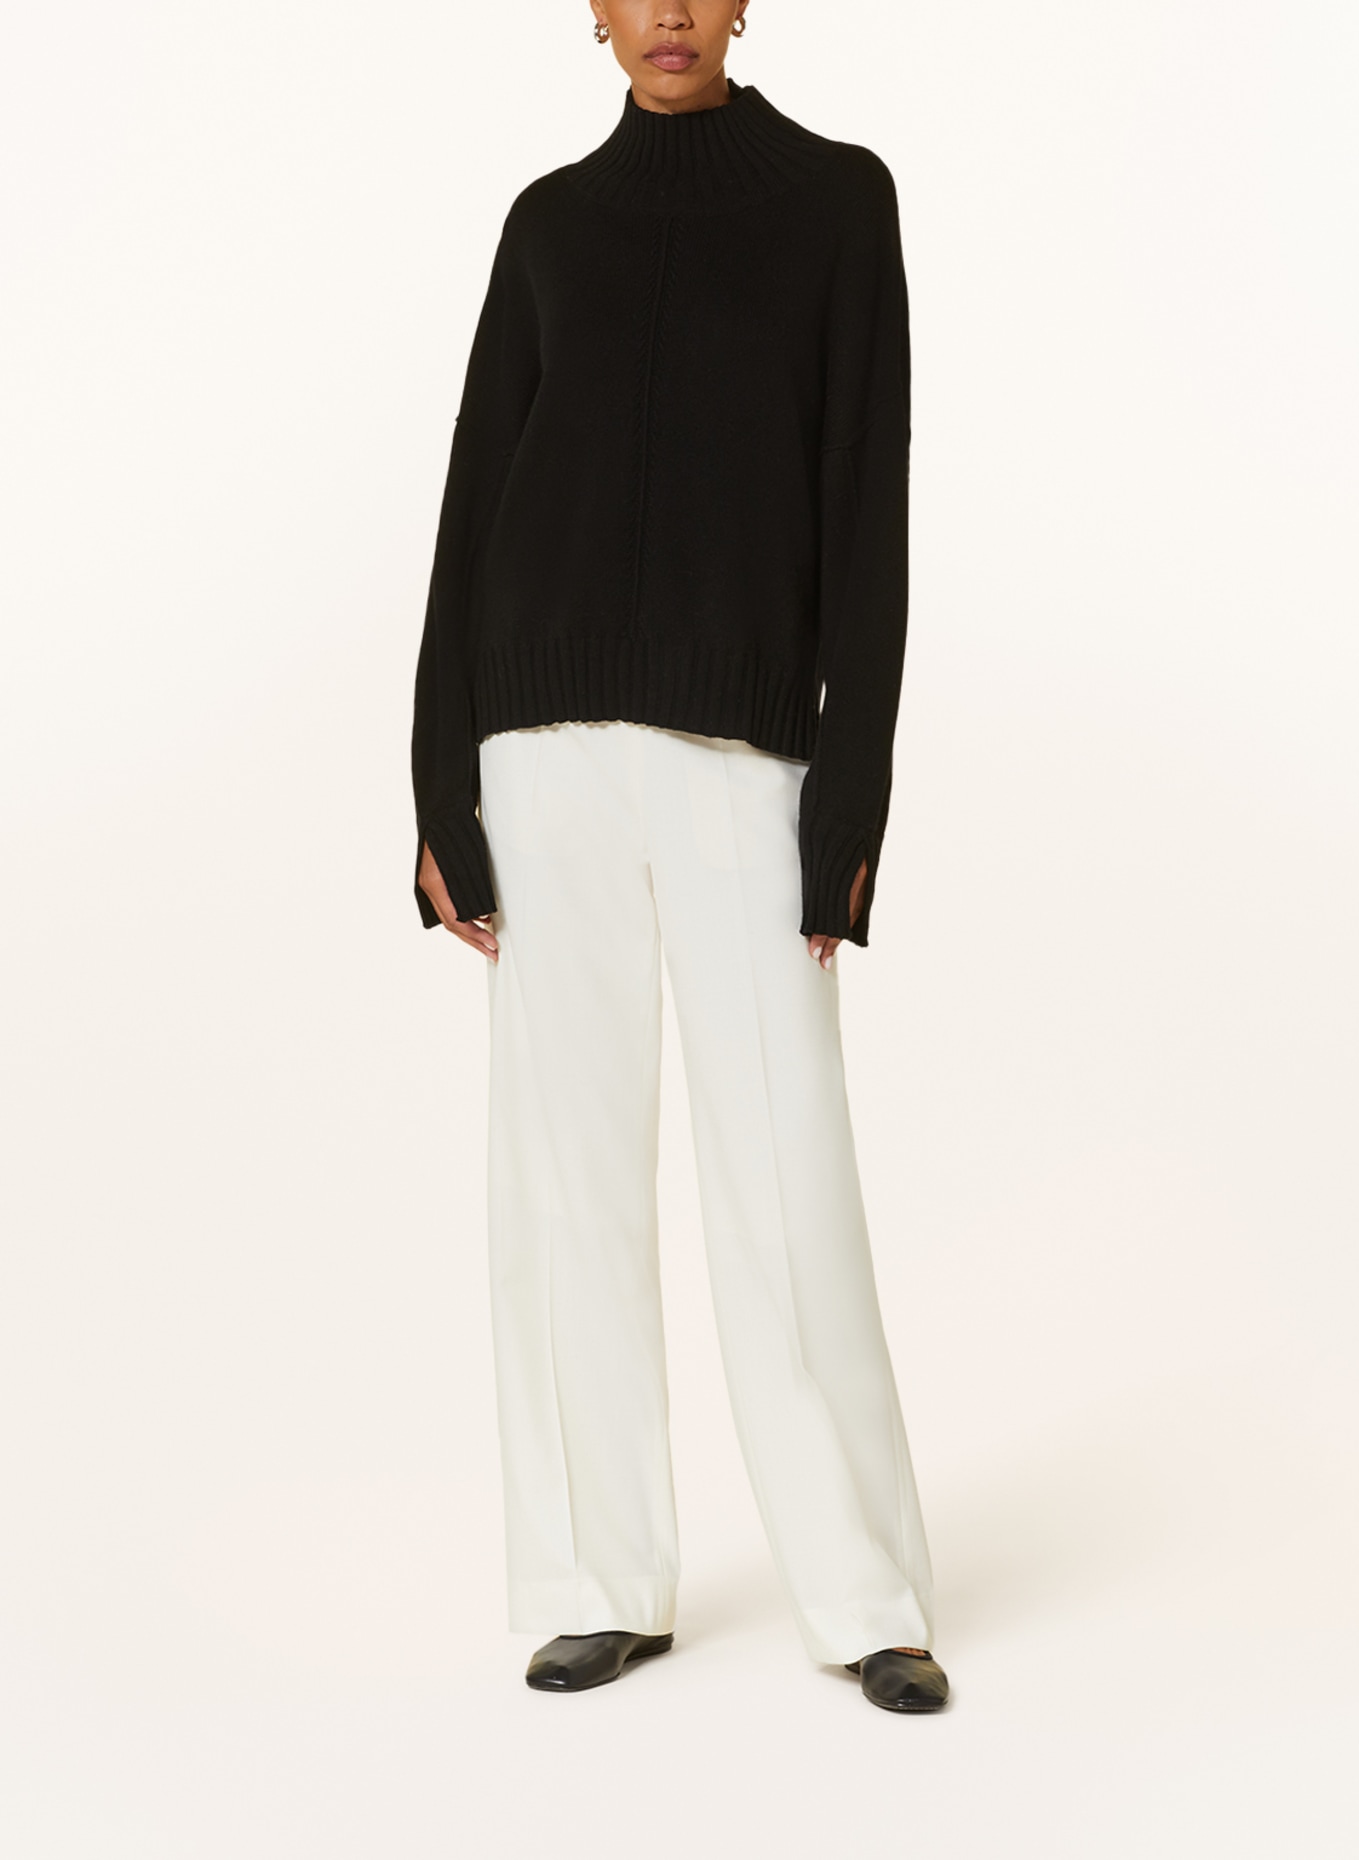 MRS & HUGS Pullover mit Cashmere, Farbe: SCHWARZ (Bild 2)